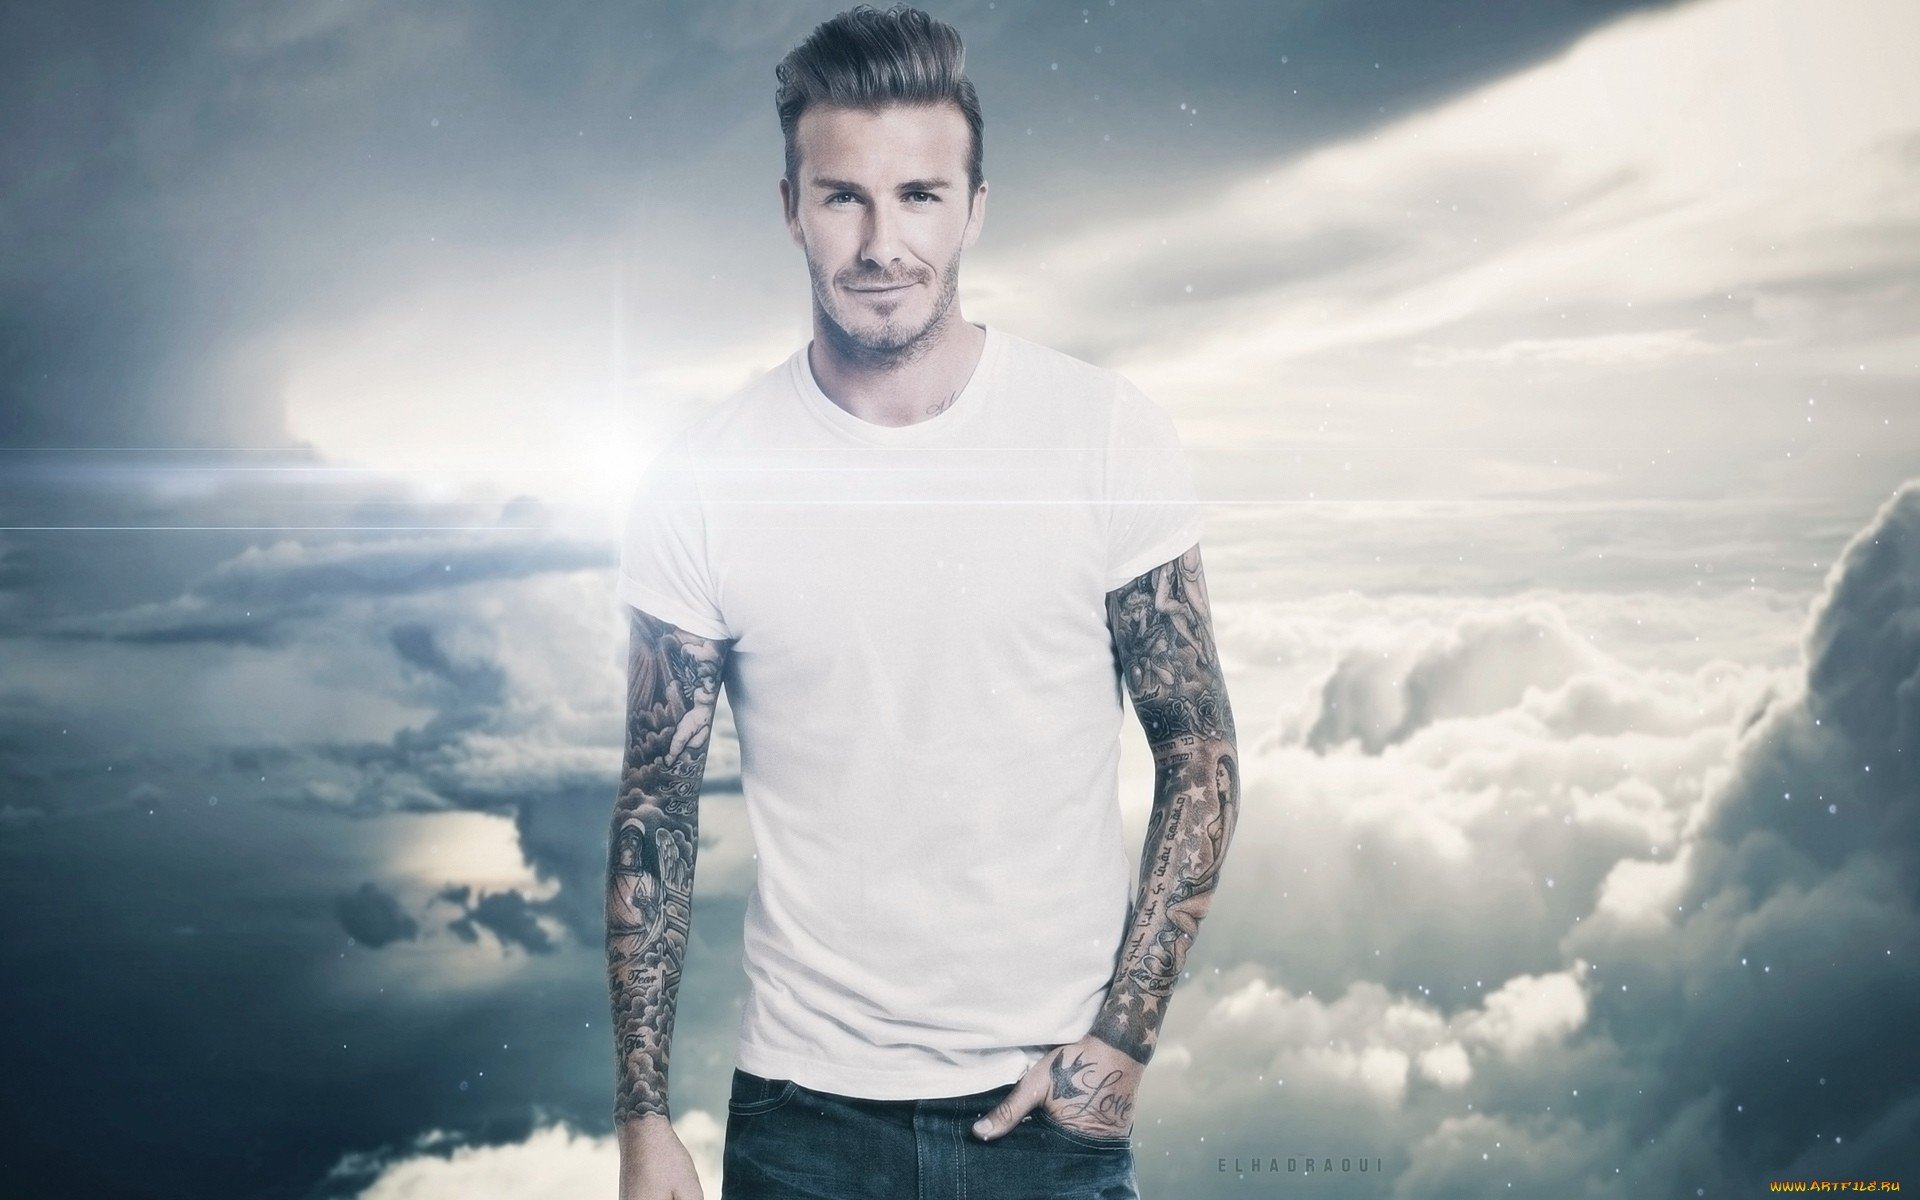 Best David Beckham Wallpaper Id - Hd David Beckham - HD Wallpaper 